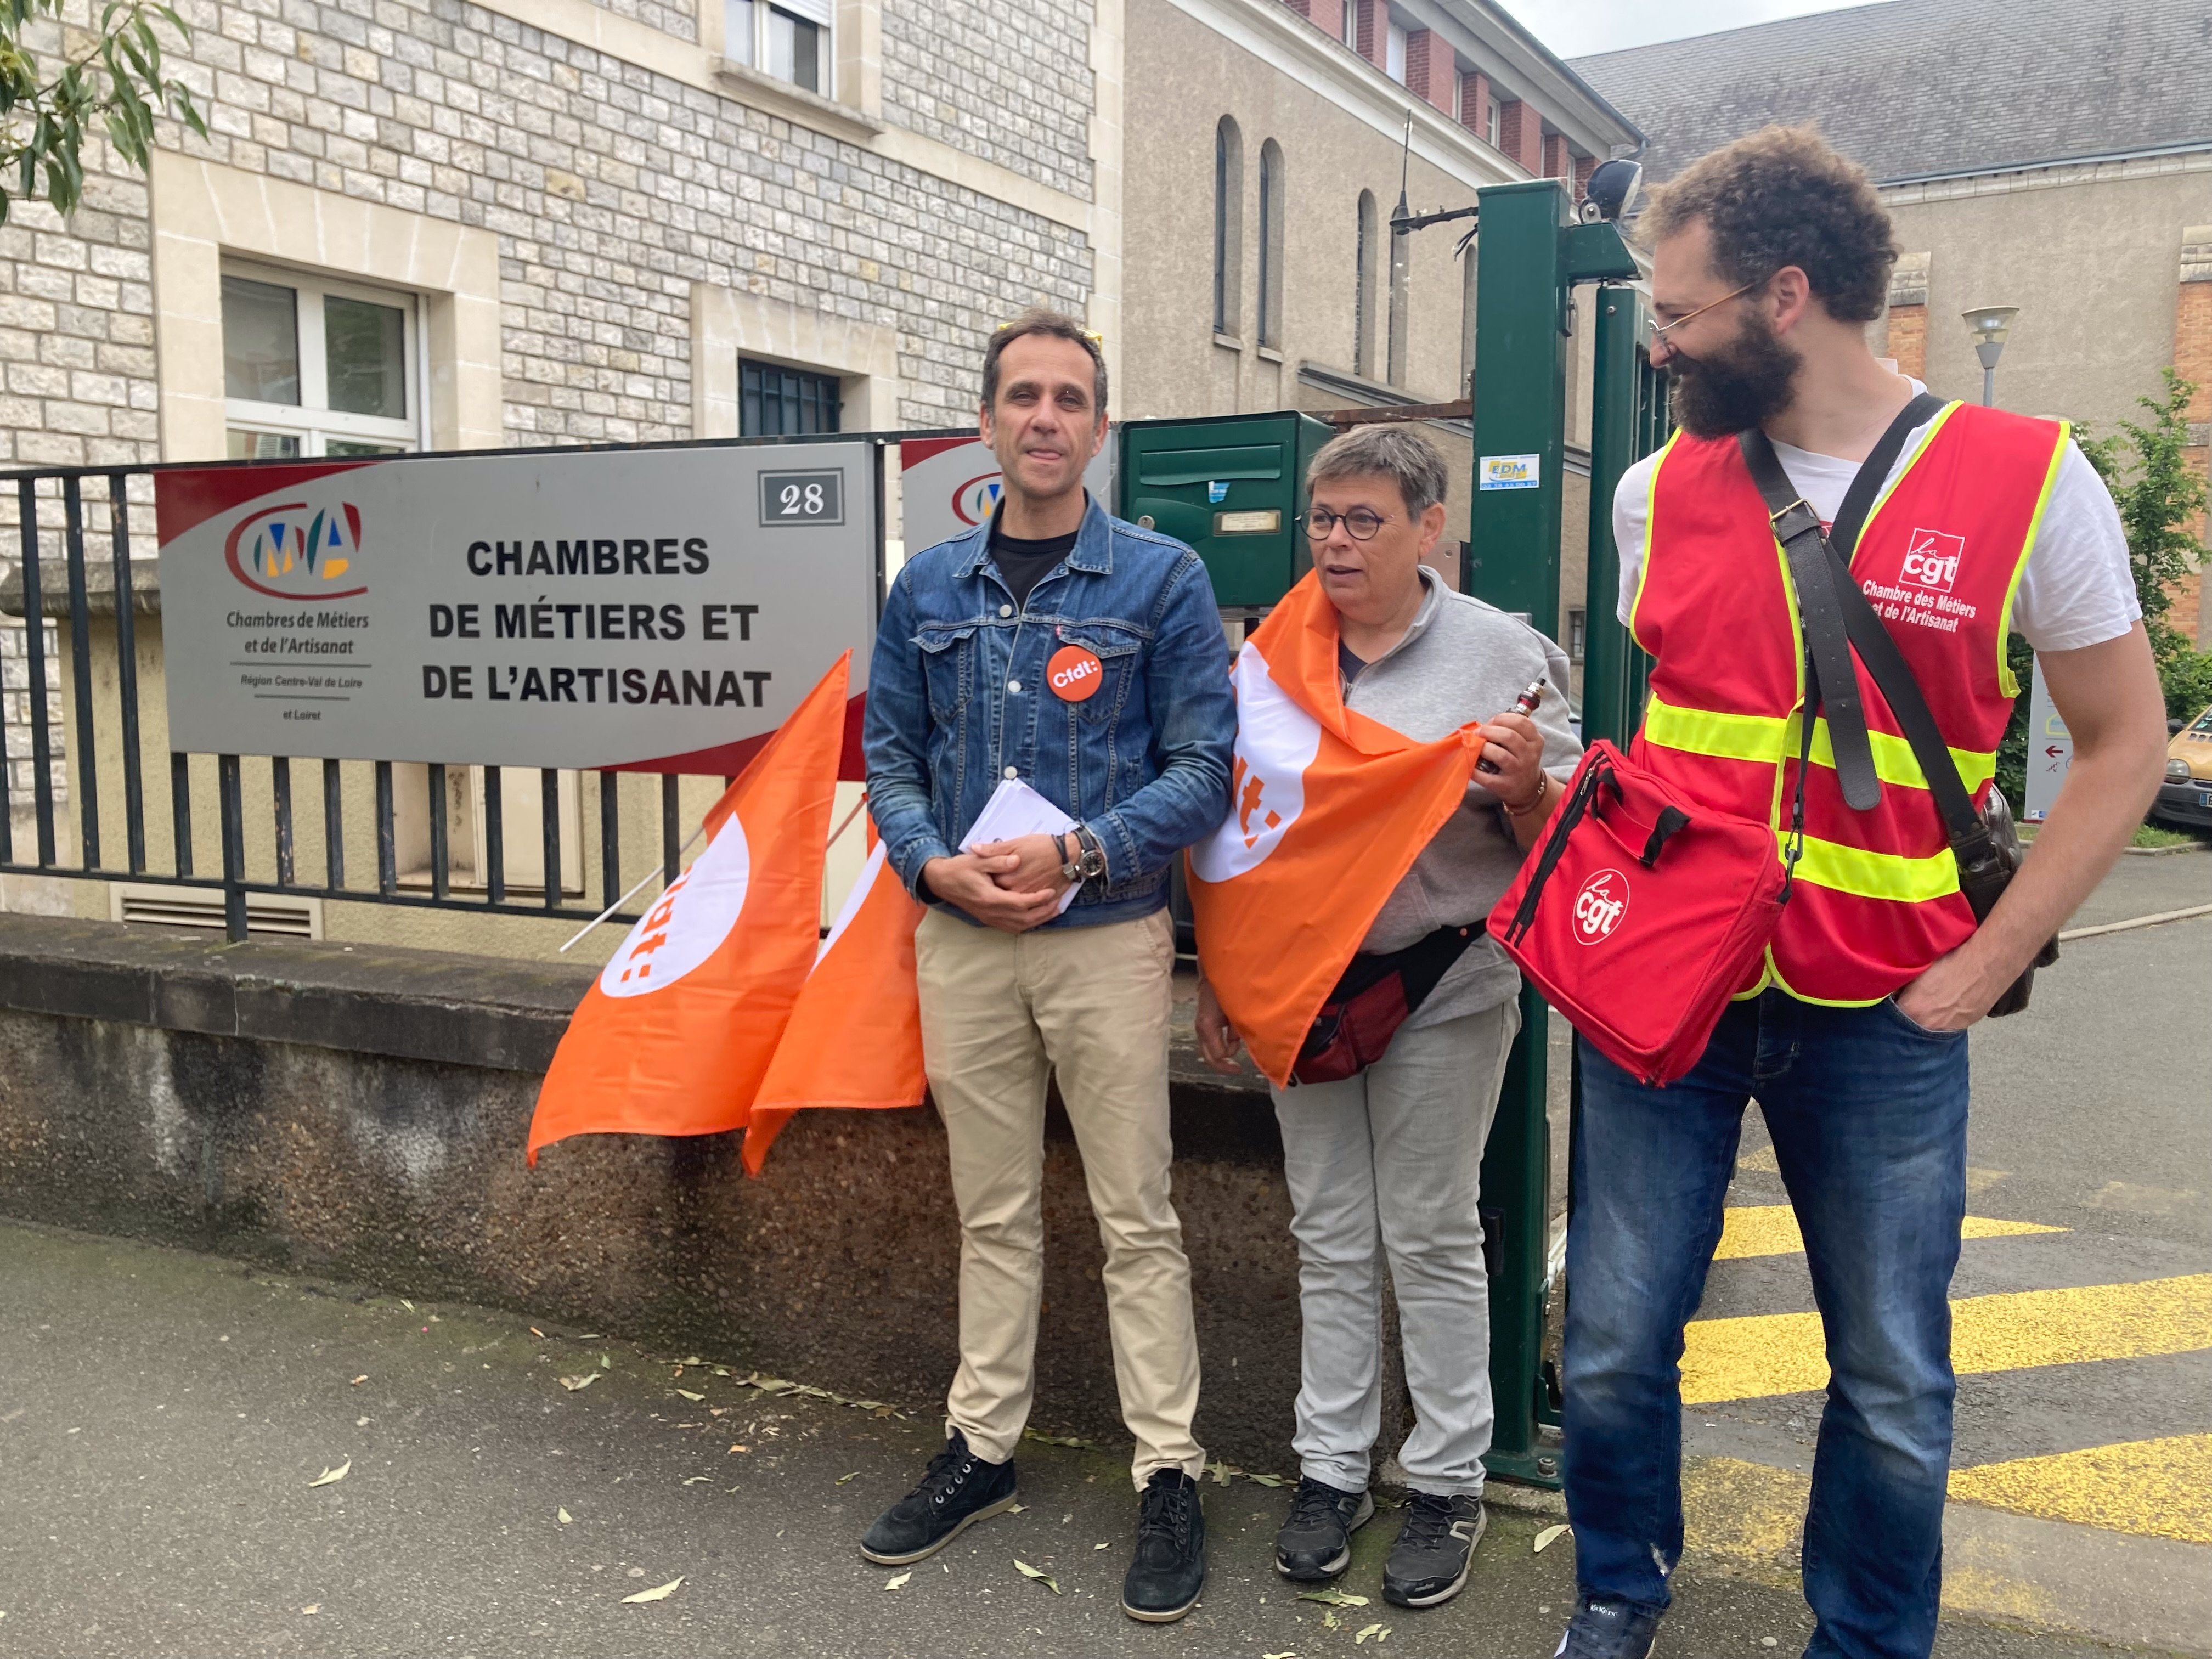 La CFDT avait appelé à la grève ce lundi pour dénoncer un plan de restructuration qui supprime 80 postes à la chambre de métiers du Centre-Val de Loire. LP/Christine Berkovicius